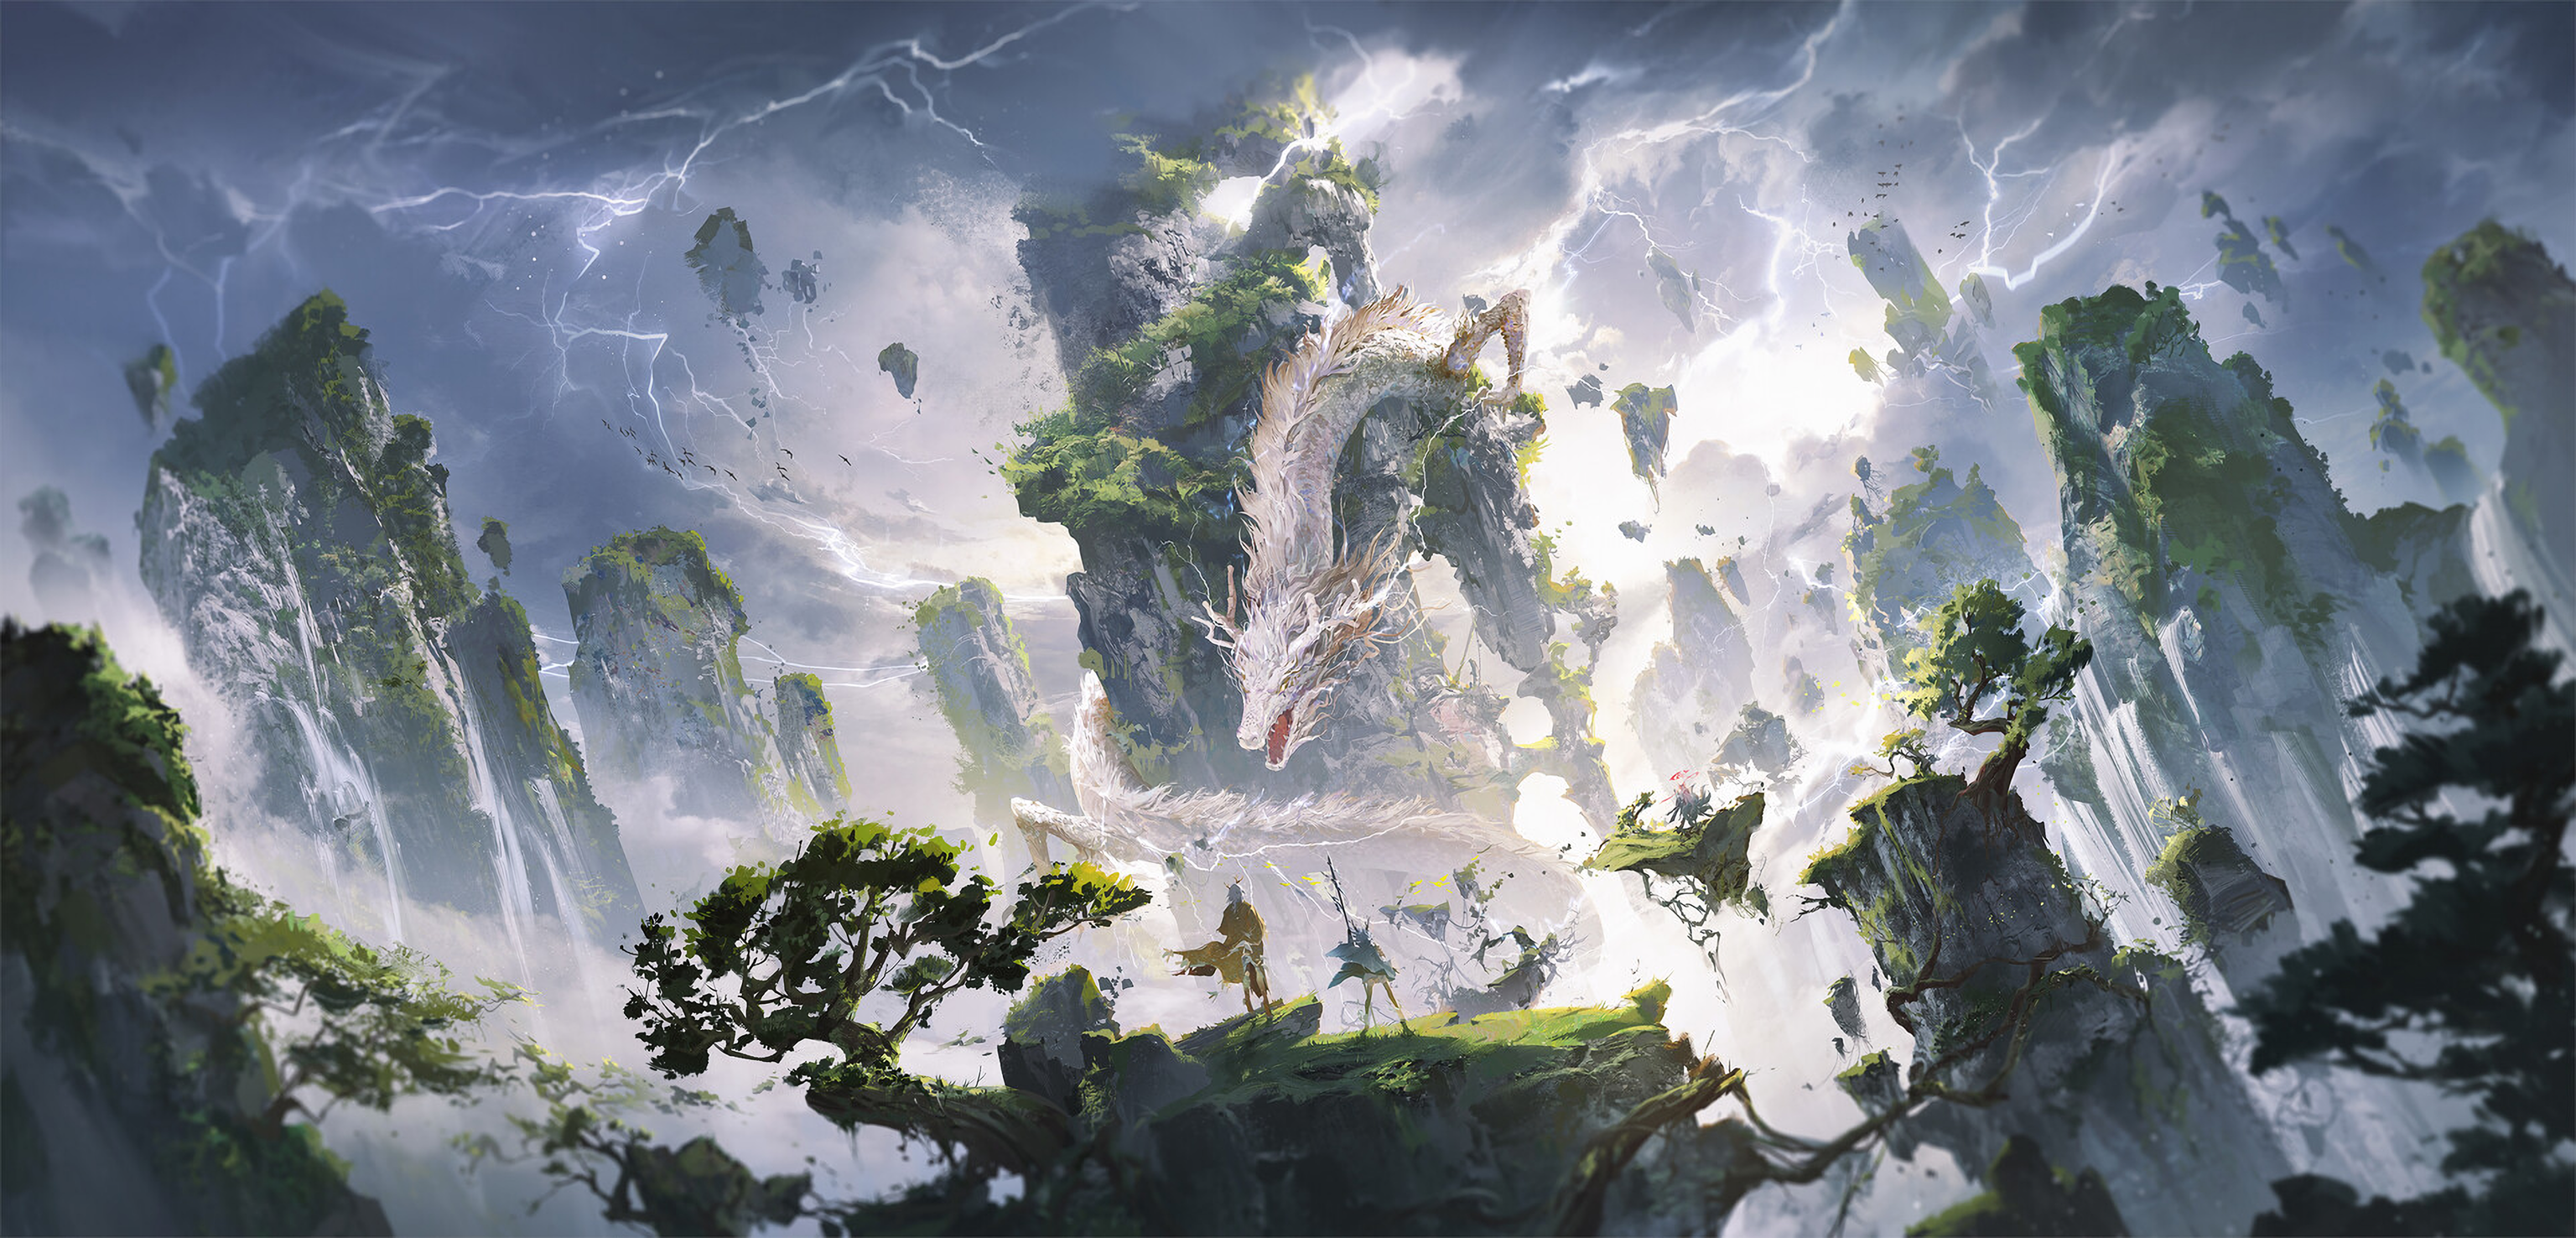 Ying Yi Illustration Dragon Chinese Dragon Loong Mountains Pine Trees Lightning 3072x1476